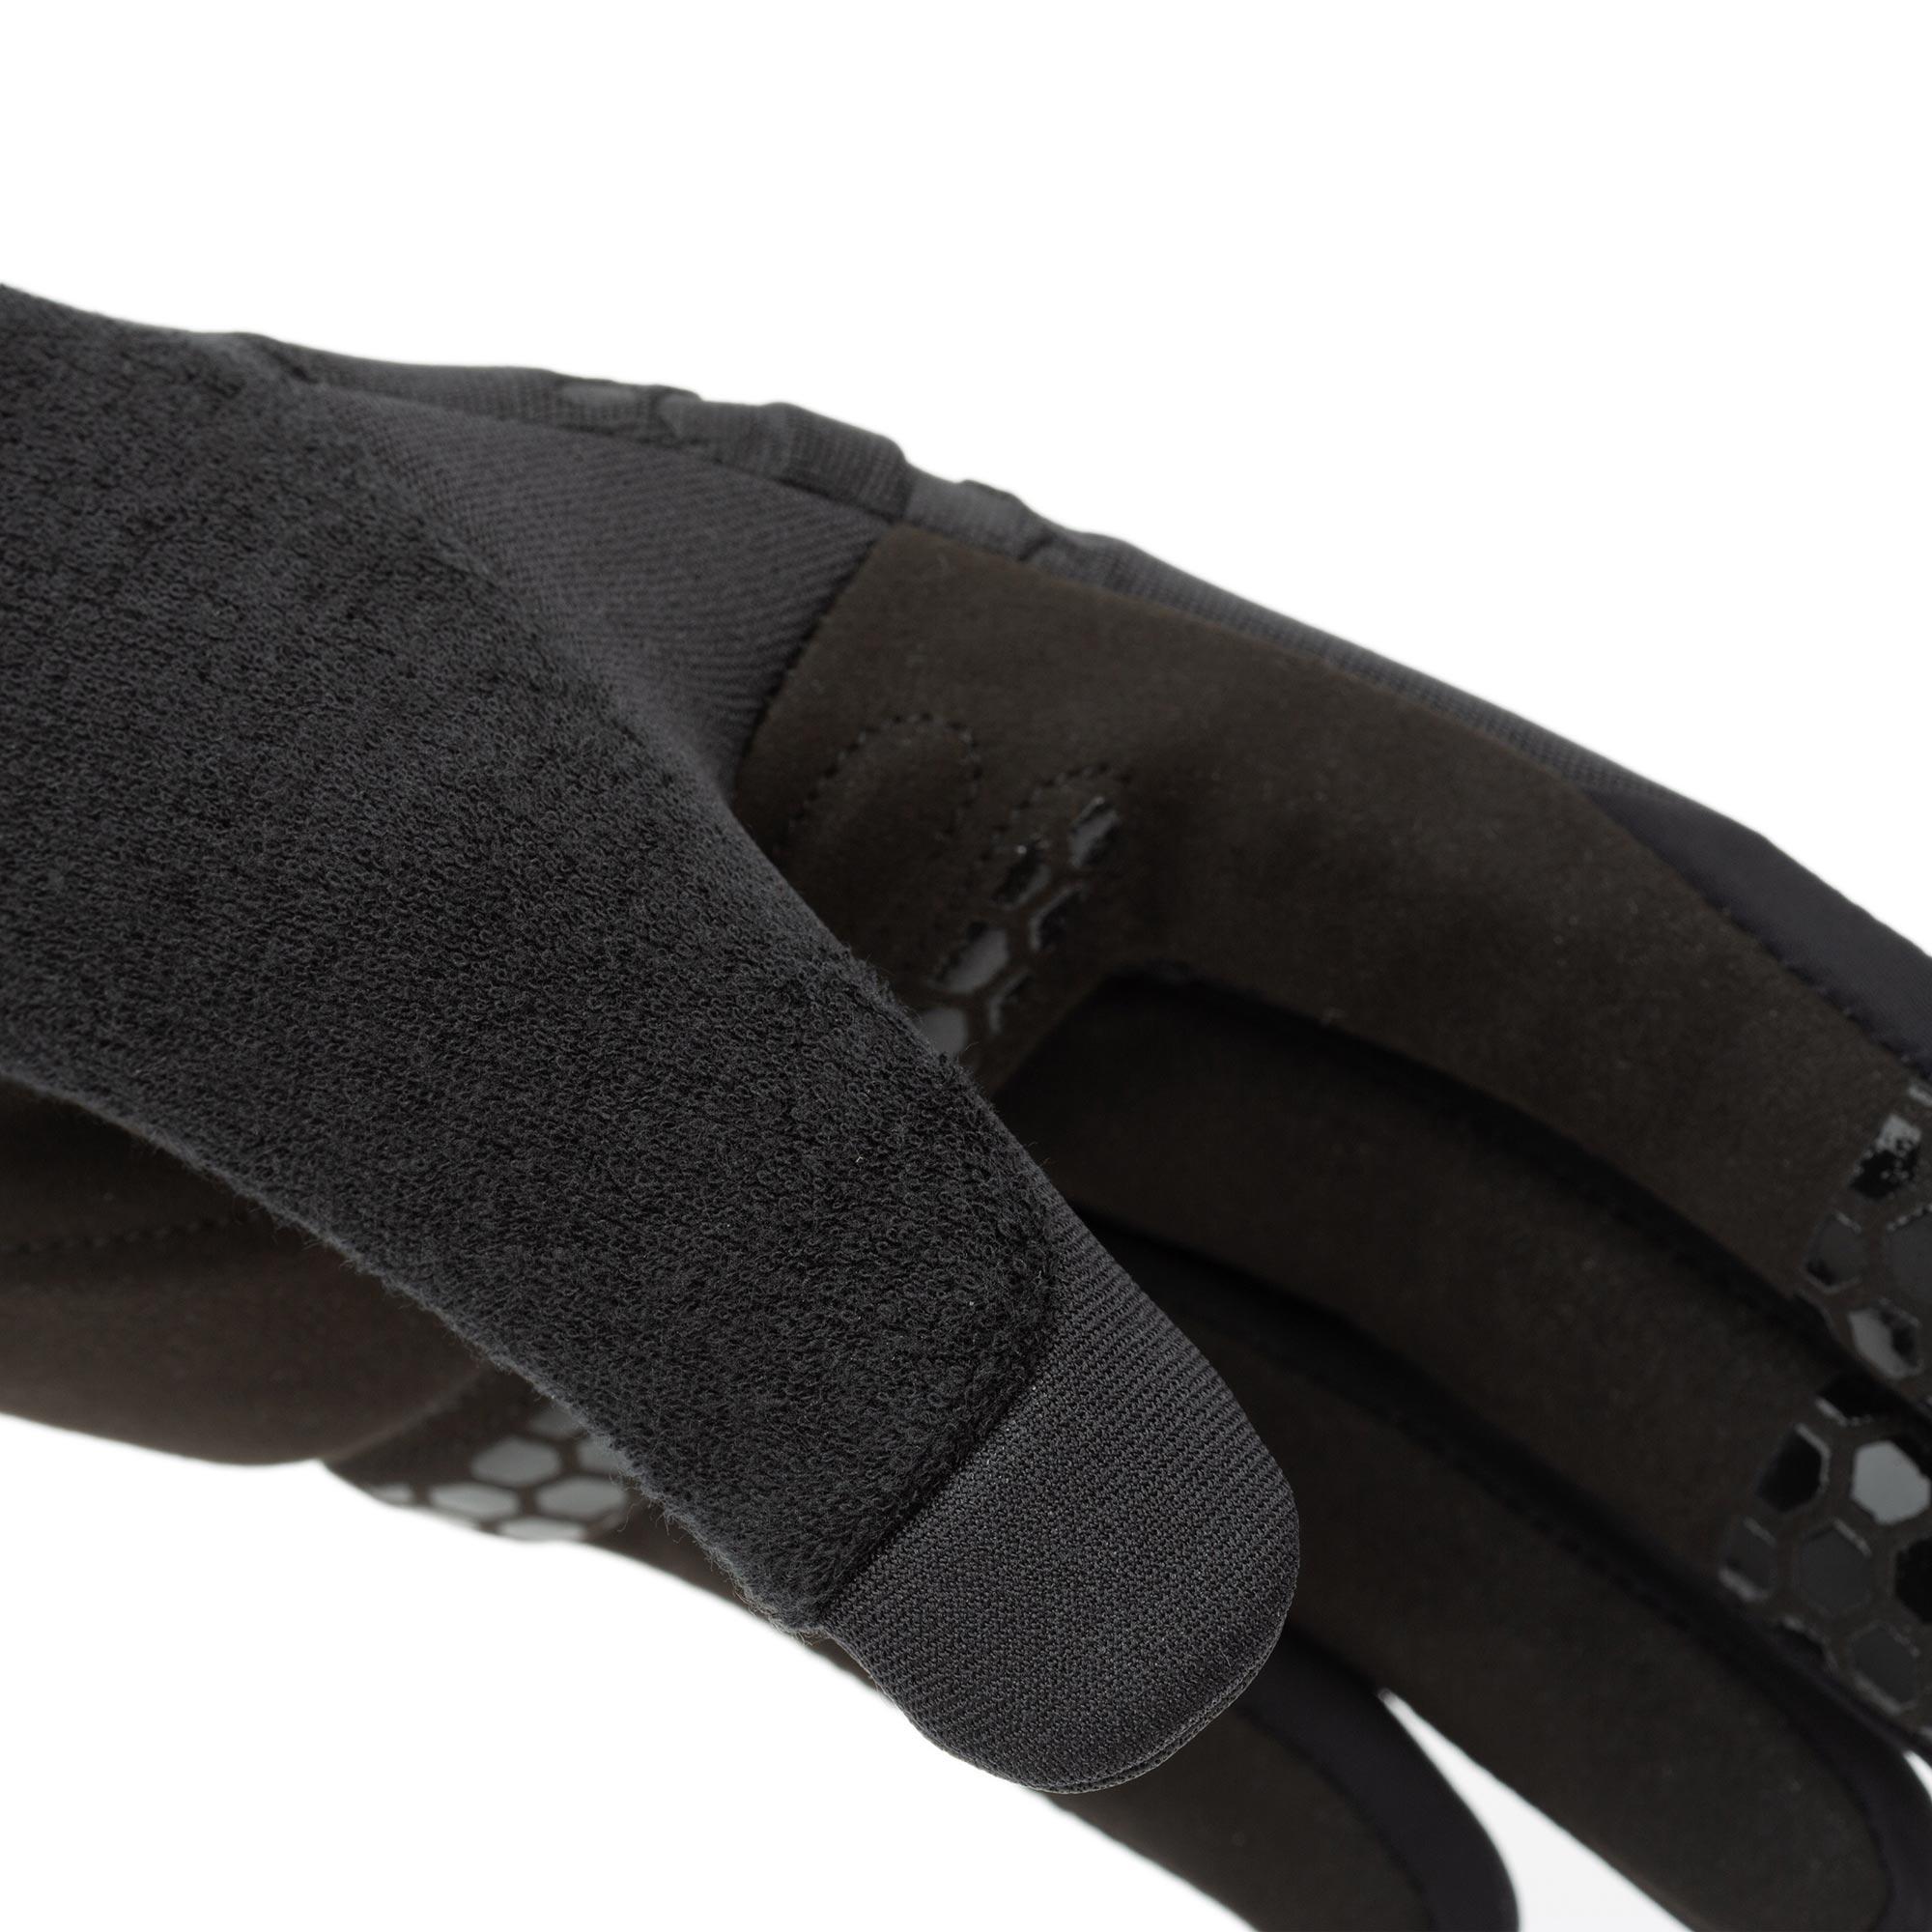 Sass Gloves Black Tucano Urbano